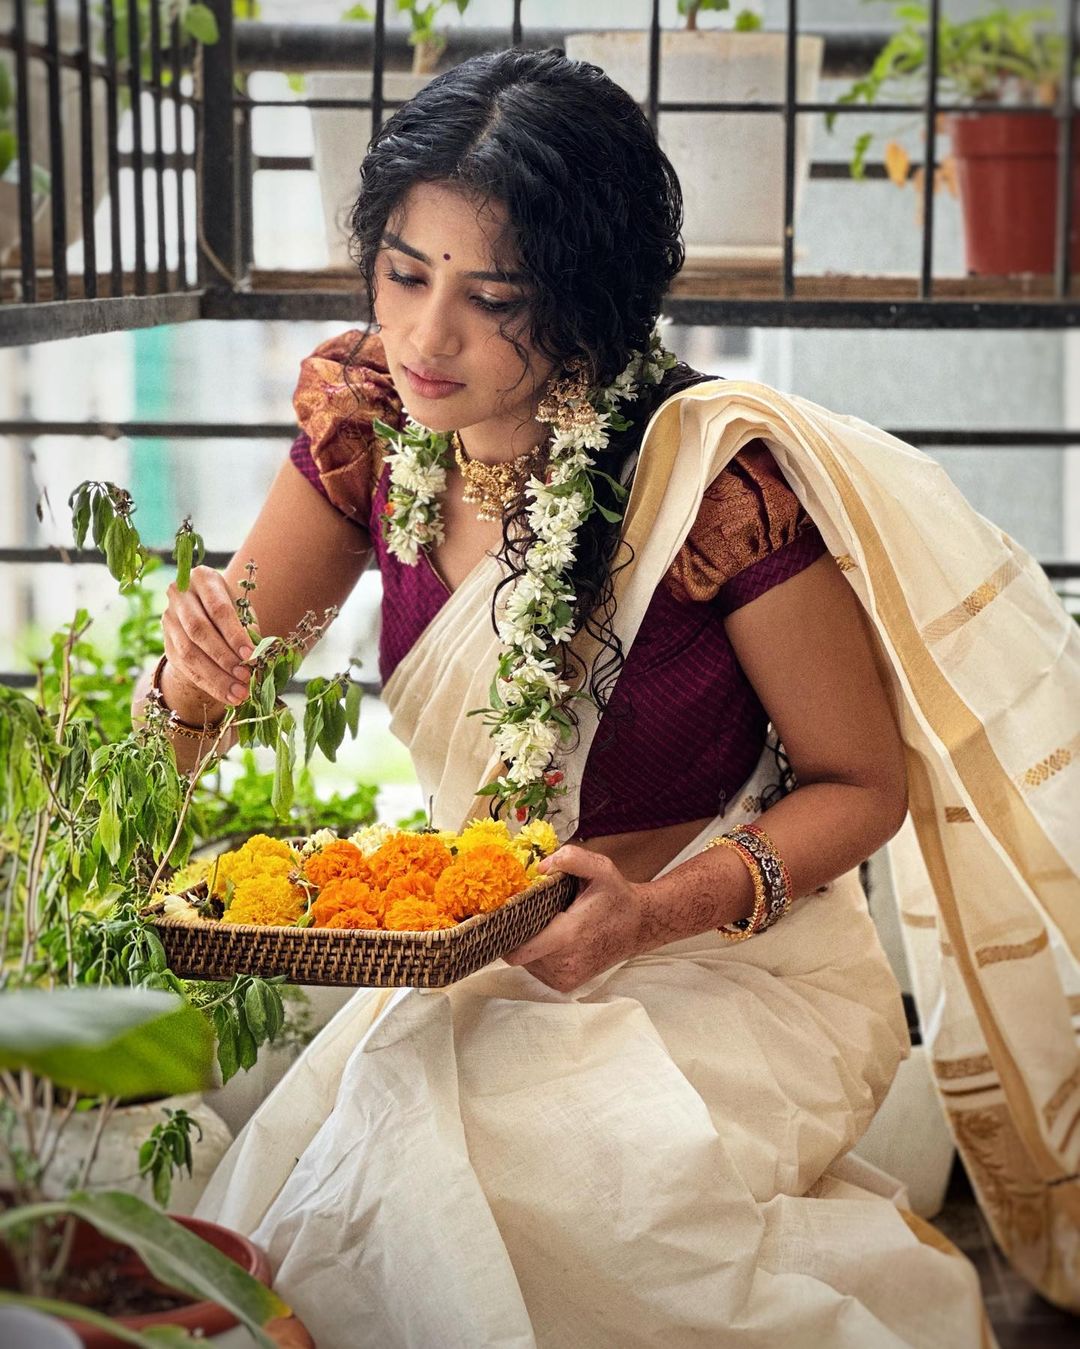 Actress Anupama Parameswaran onam celebration photos goes viral (4)